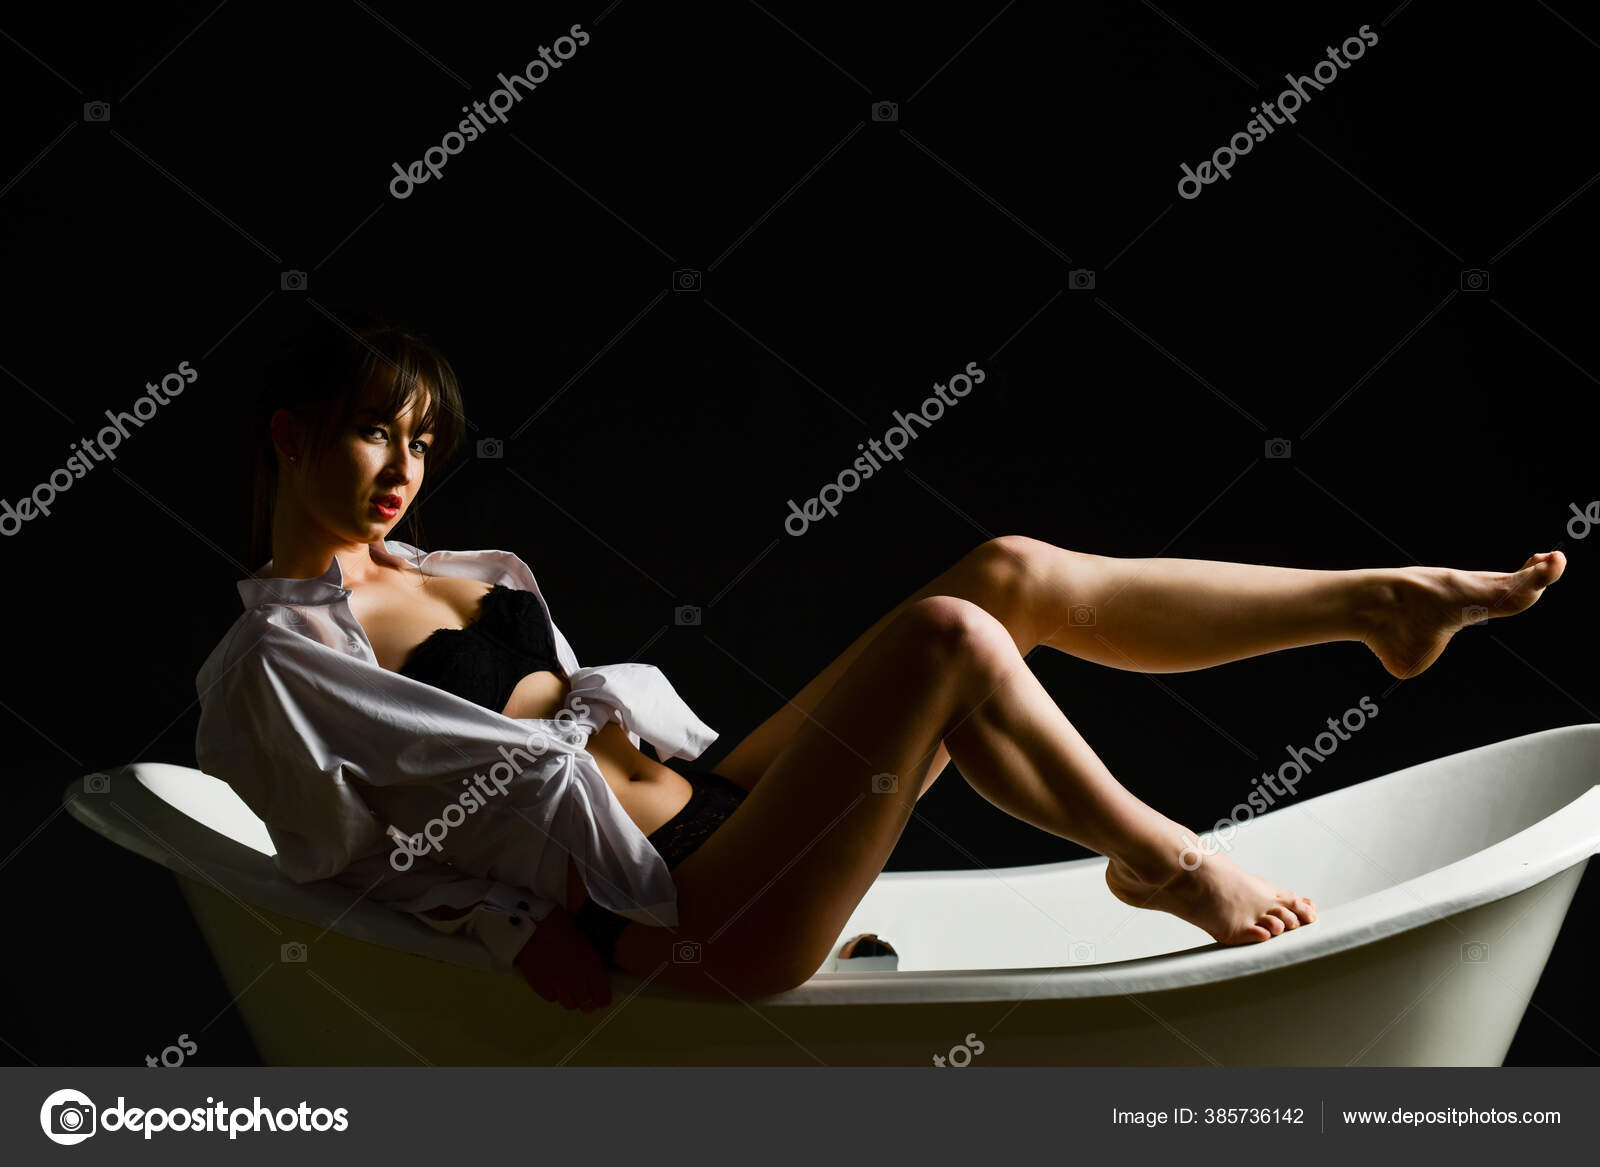 Woman in mens shirt erotic